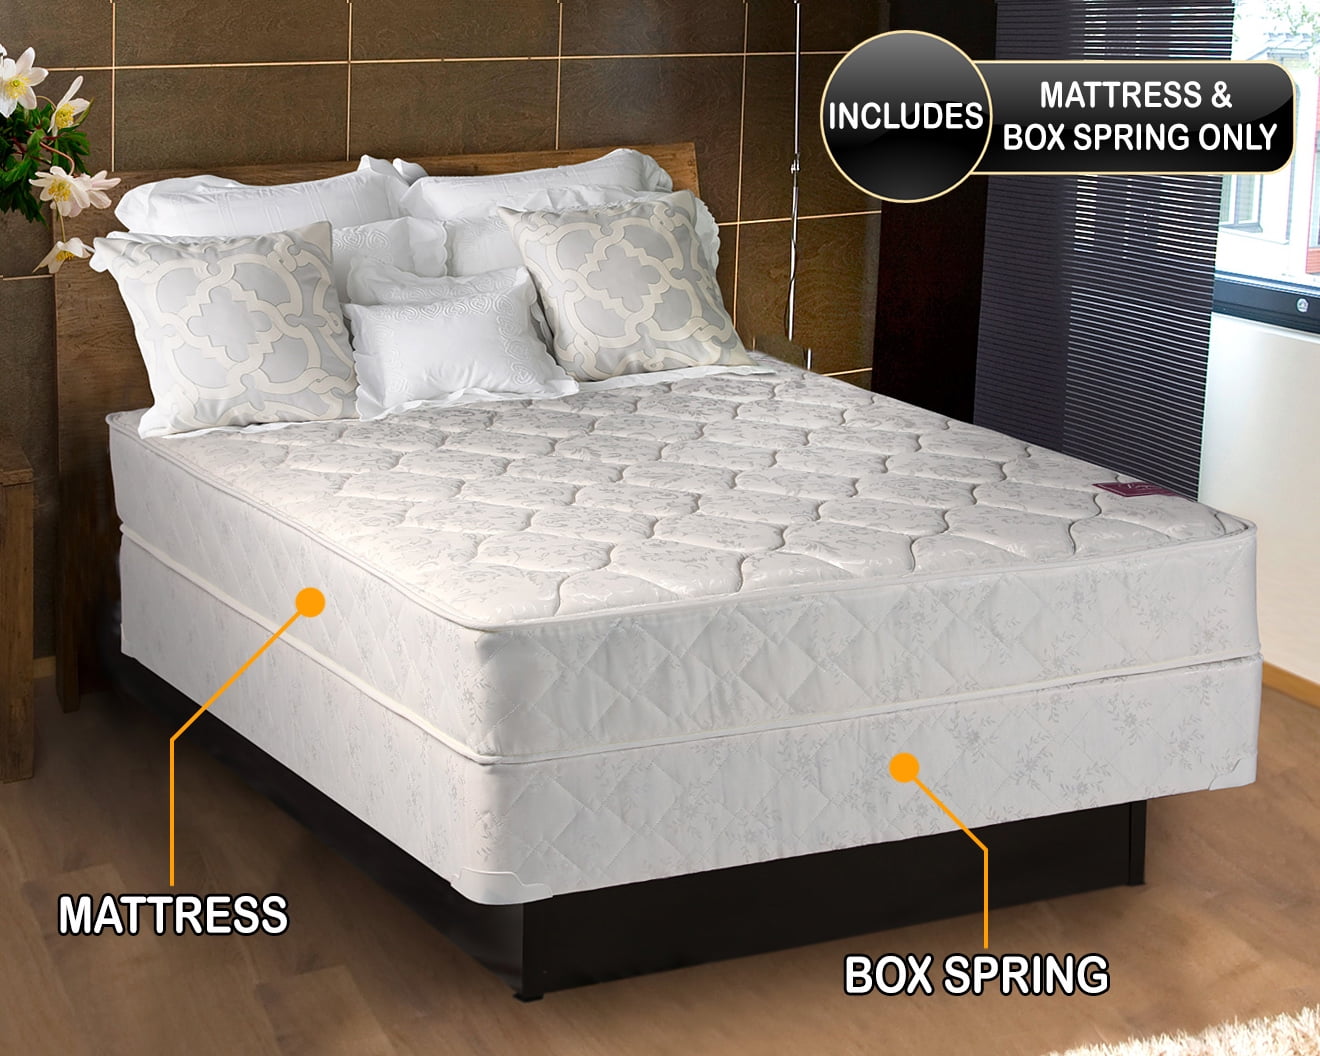 boscov's mattress set sale